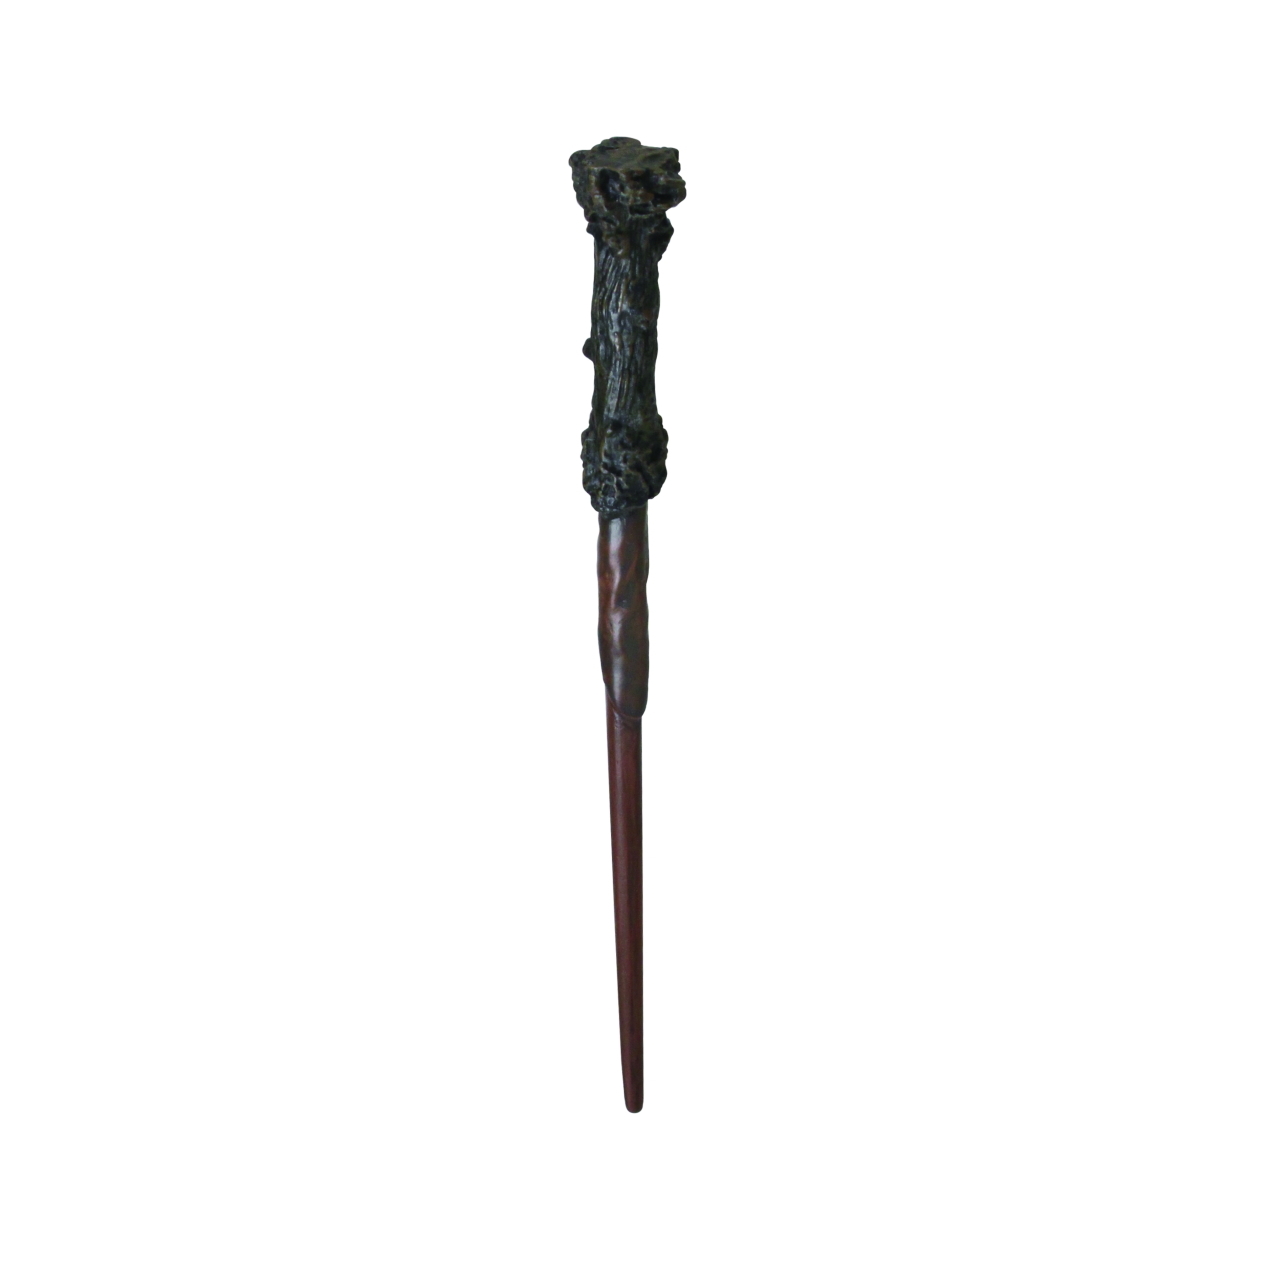 映画 ハリー ポッター の杖がミニチュア化 ガチャ 魔法の杖コレクション Best 登場 Hobby Watch